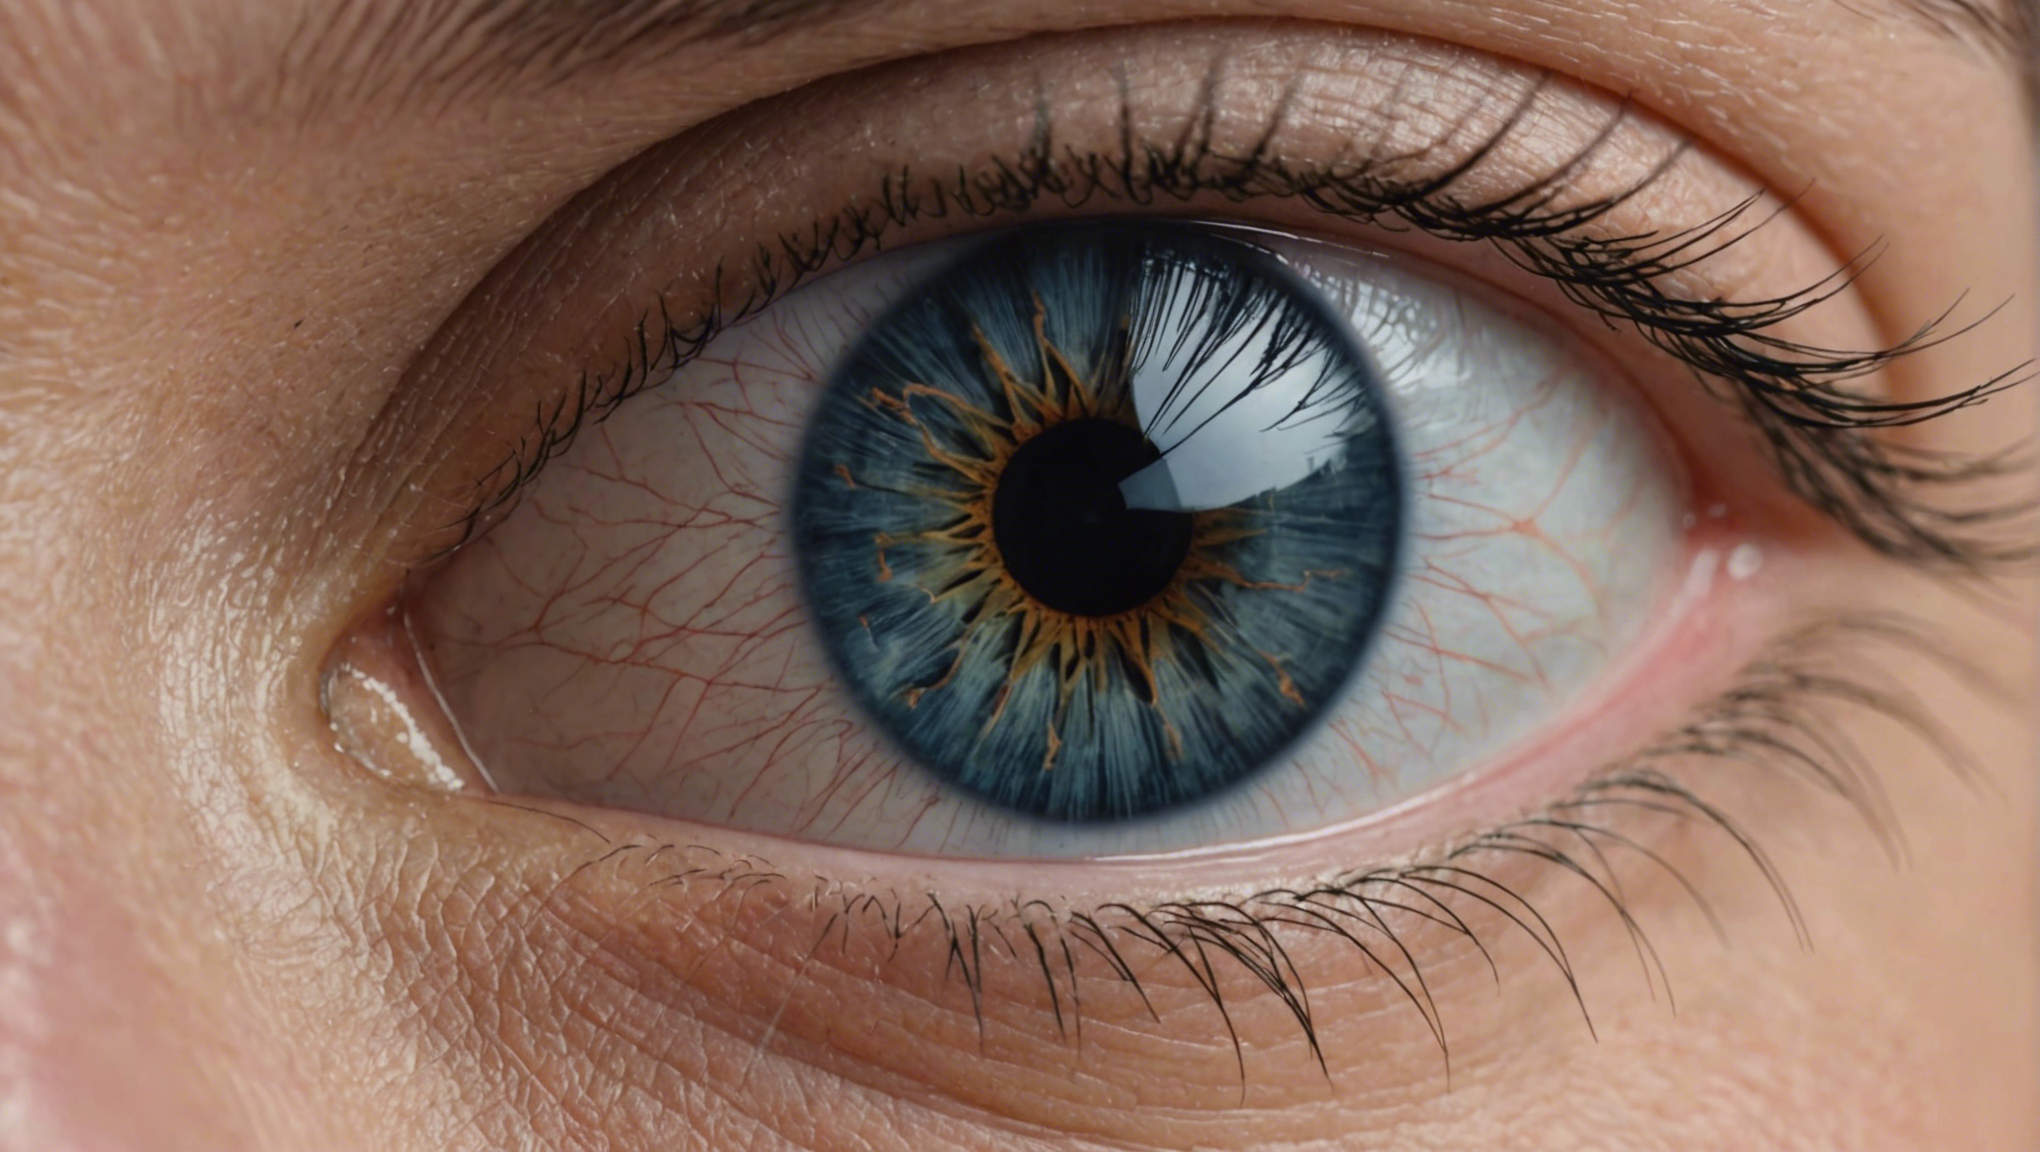 découvrez comment l'opération des yeux à strasbourg peut vous offrir une solution pour améliorer votre vision et retrouver une qualité de vie optimale.